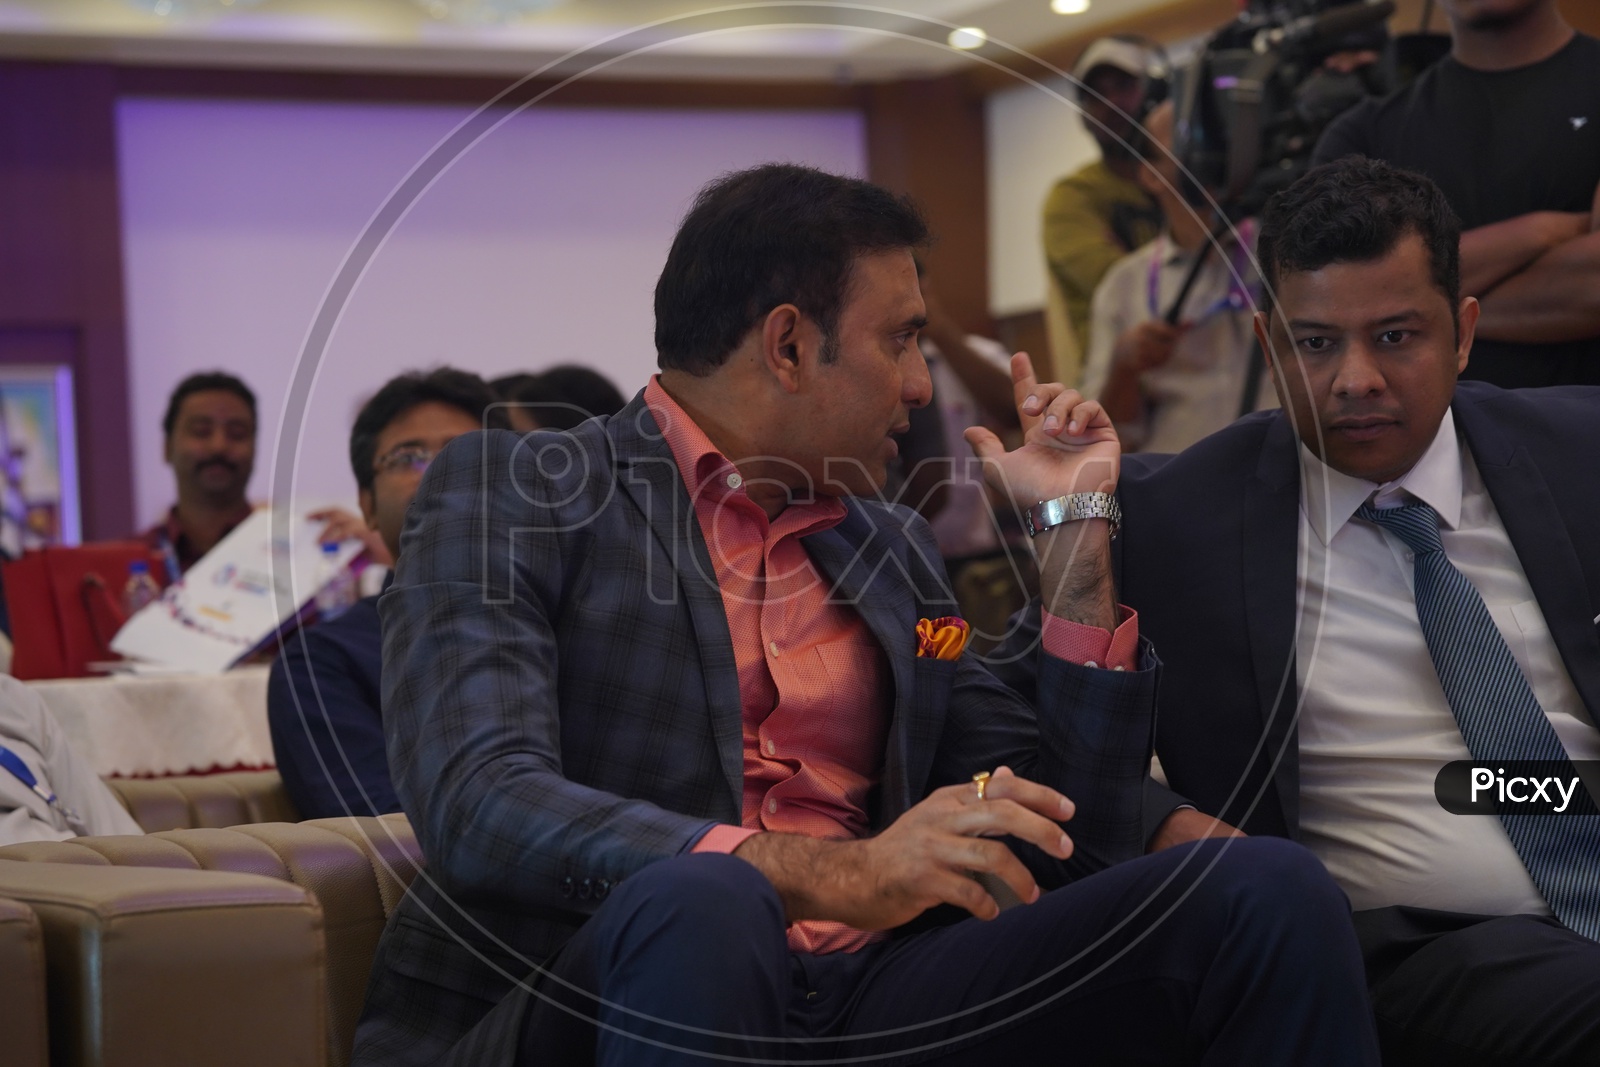 Former Indian Cricketer V V S Laxman in Social Media Summit & Awards Amaravati 2018